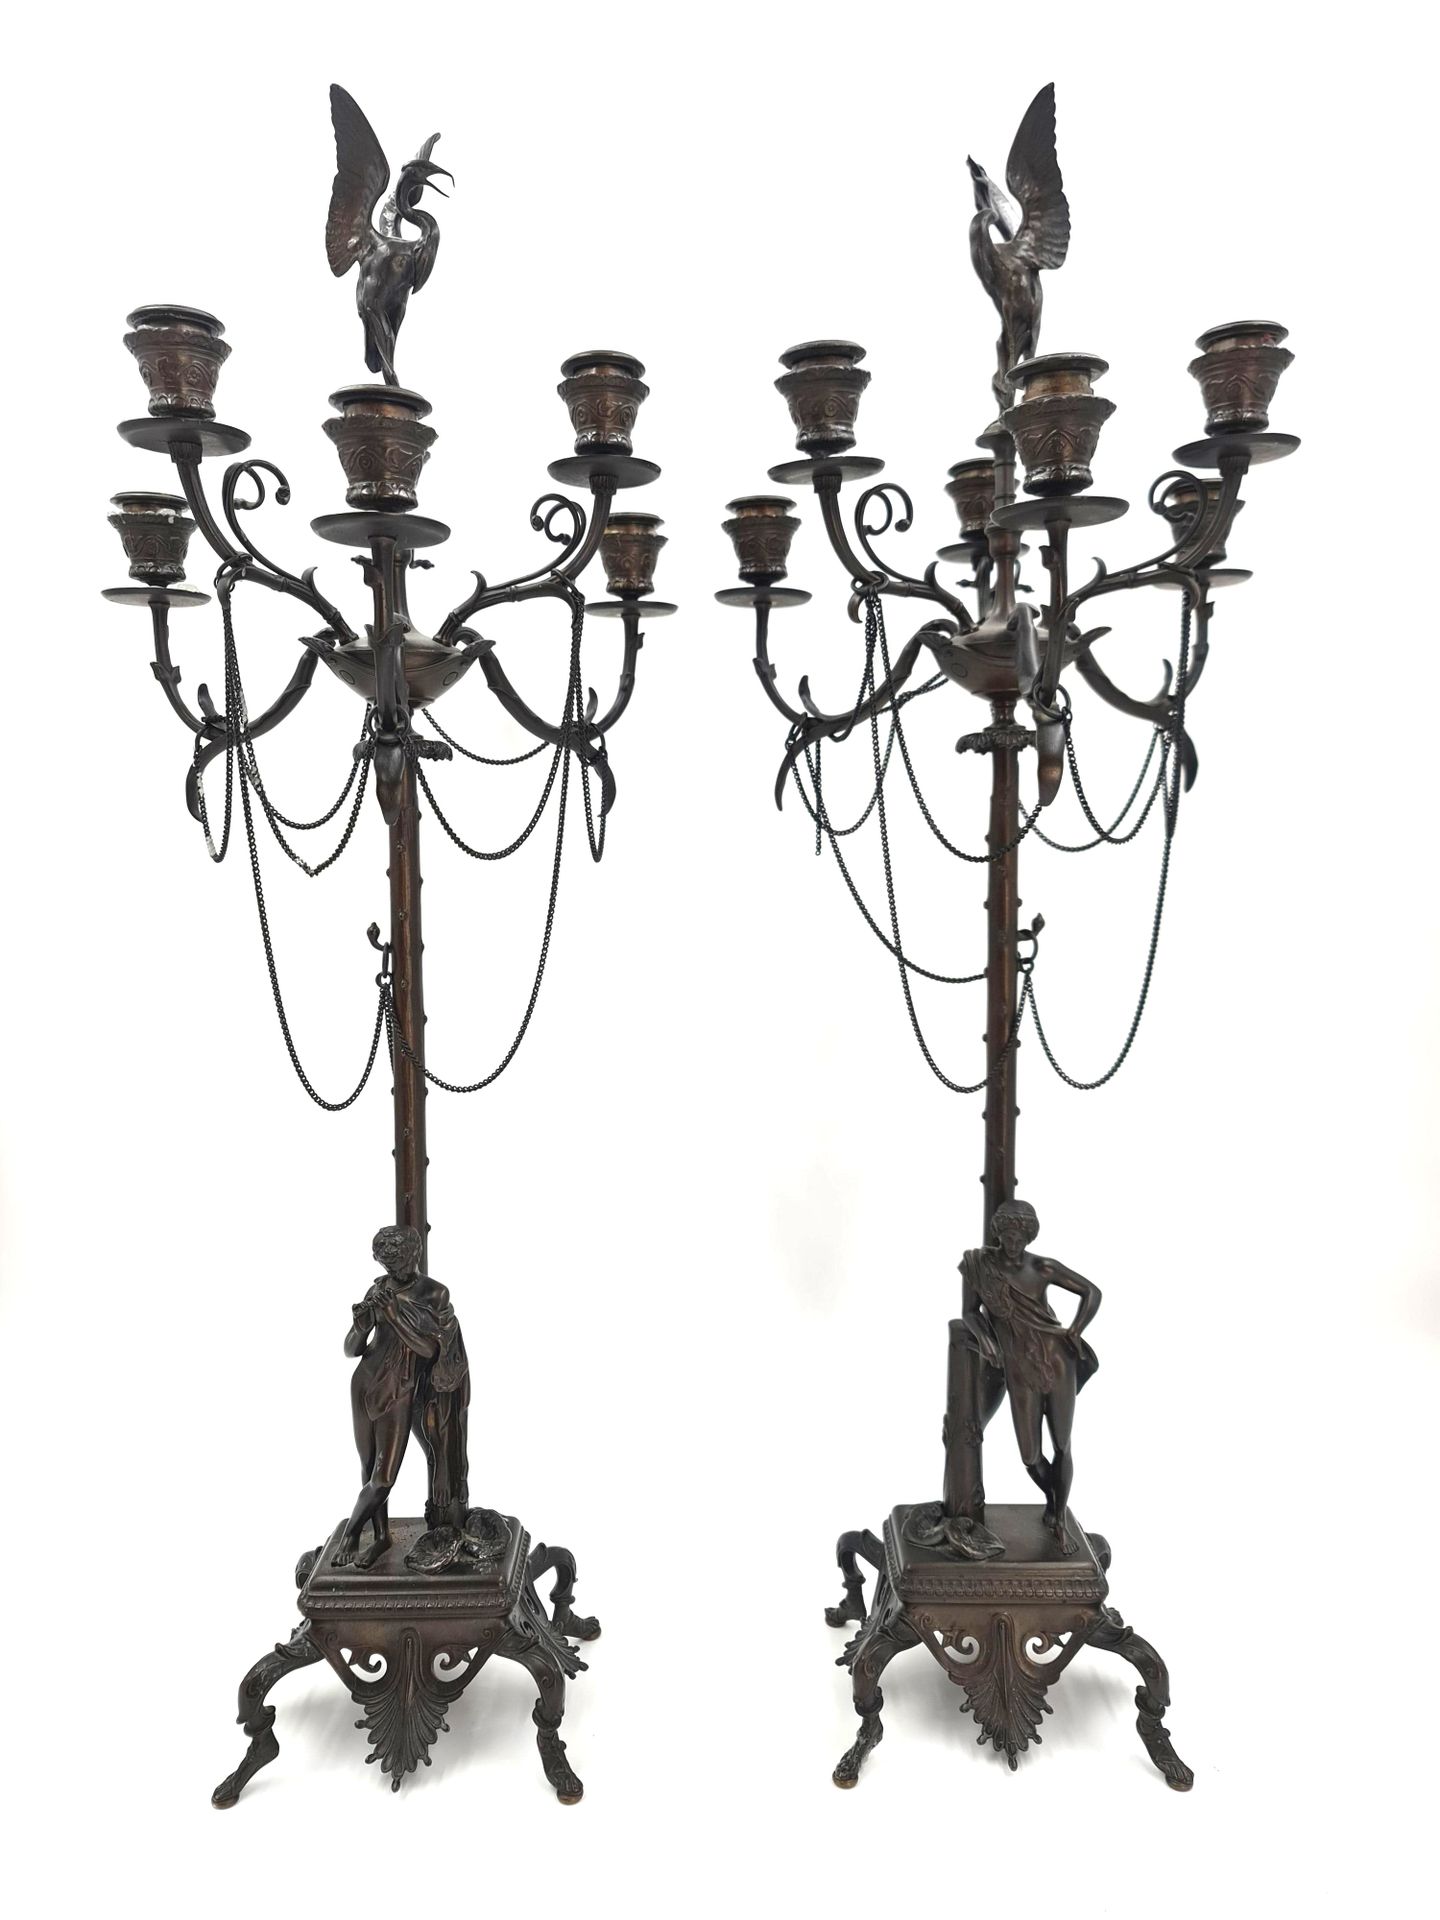 Null 一对新古典主义的青铜烛台，有古色古香的主题和涉猎者。高度：75厘米。



一对新古典主义风格的青铜烛台，带有仿古主题和高跷。高度：75厘米。